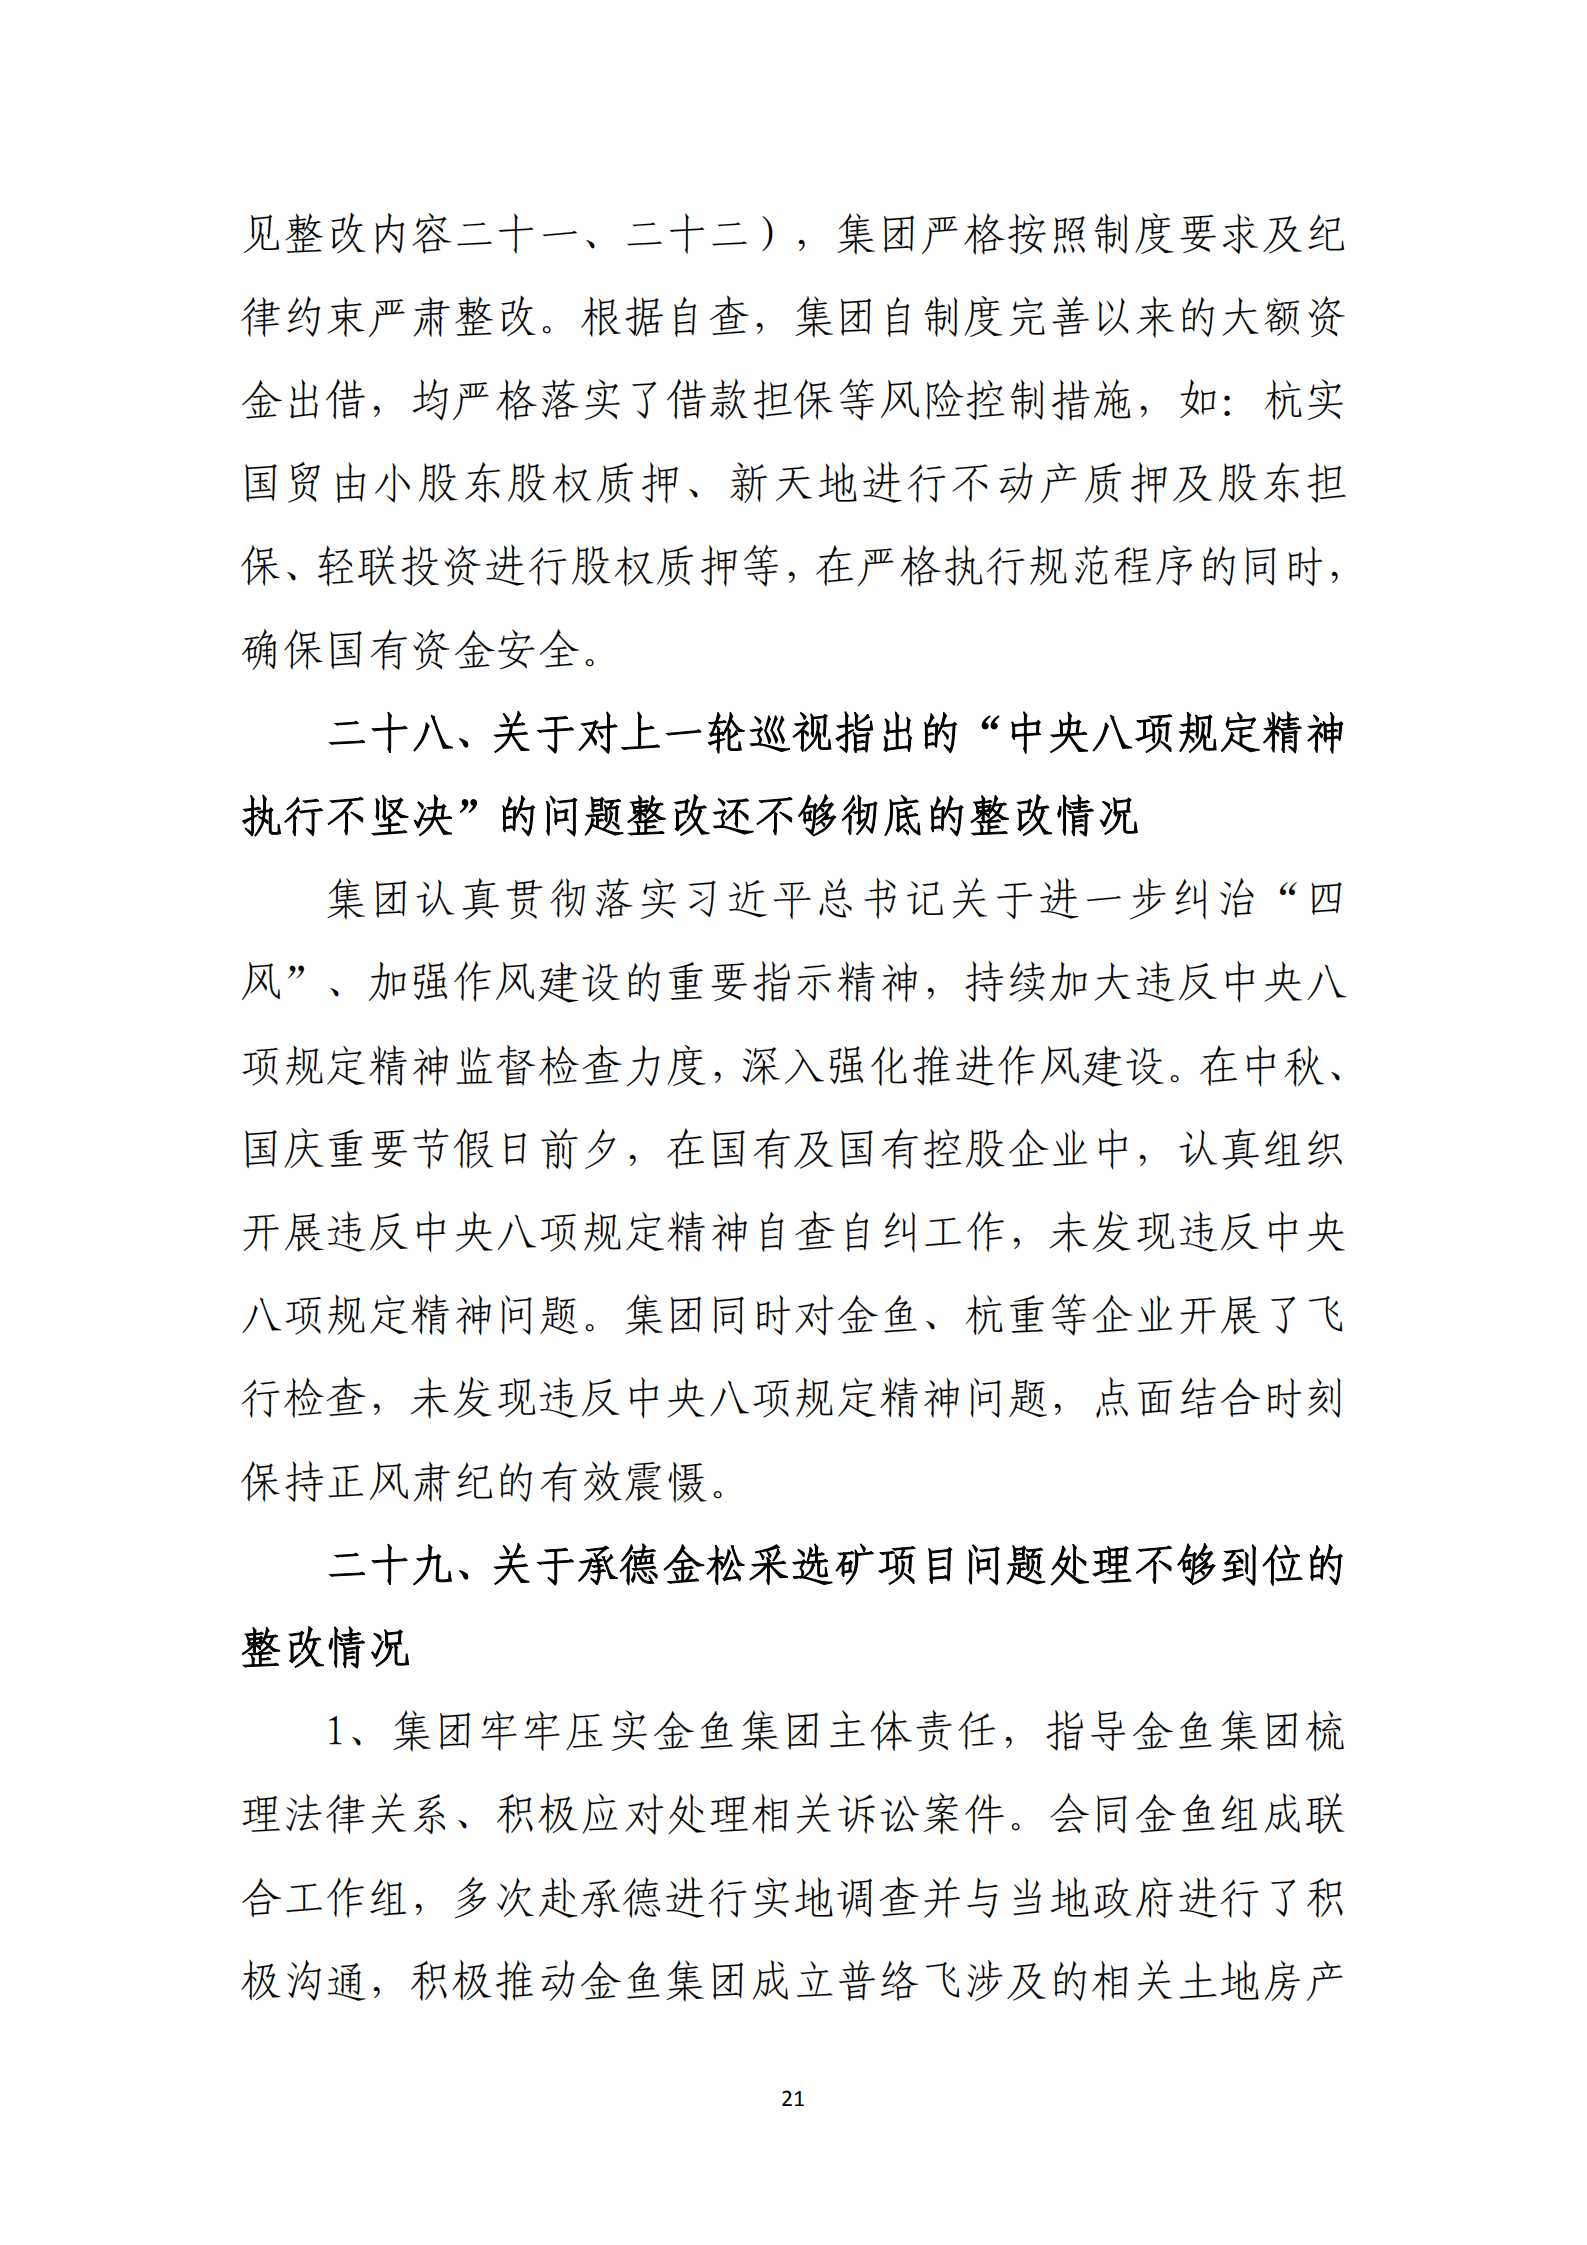 乐虎国际游戏官网党委关于巡察整改情况的通报_20.png